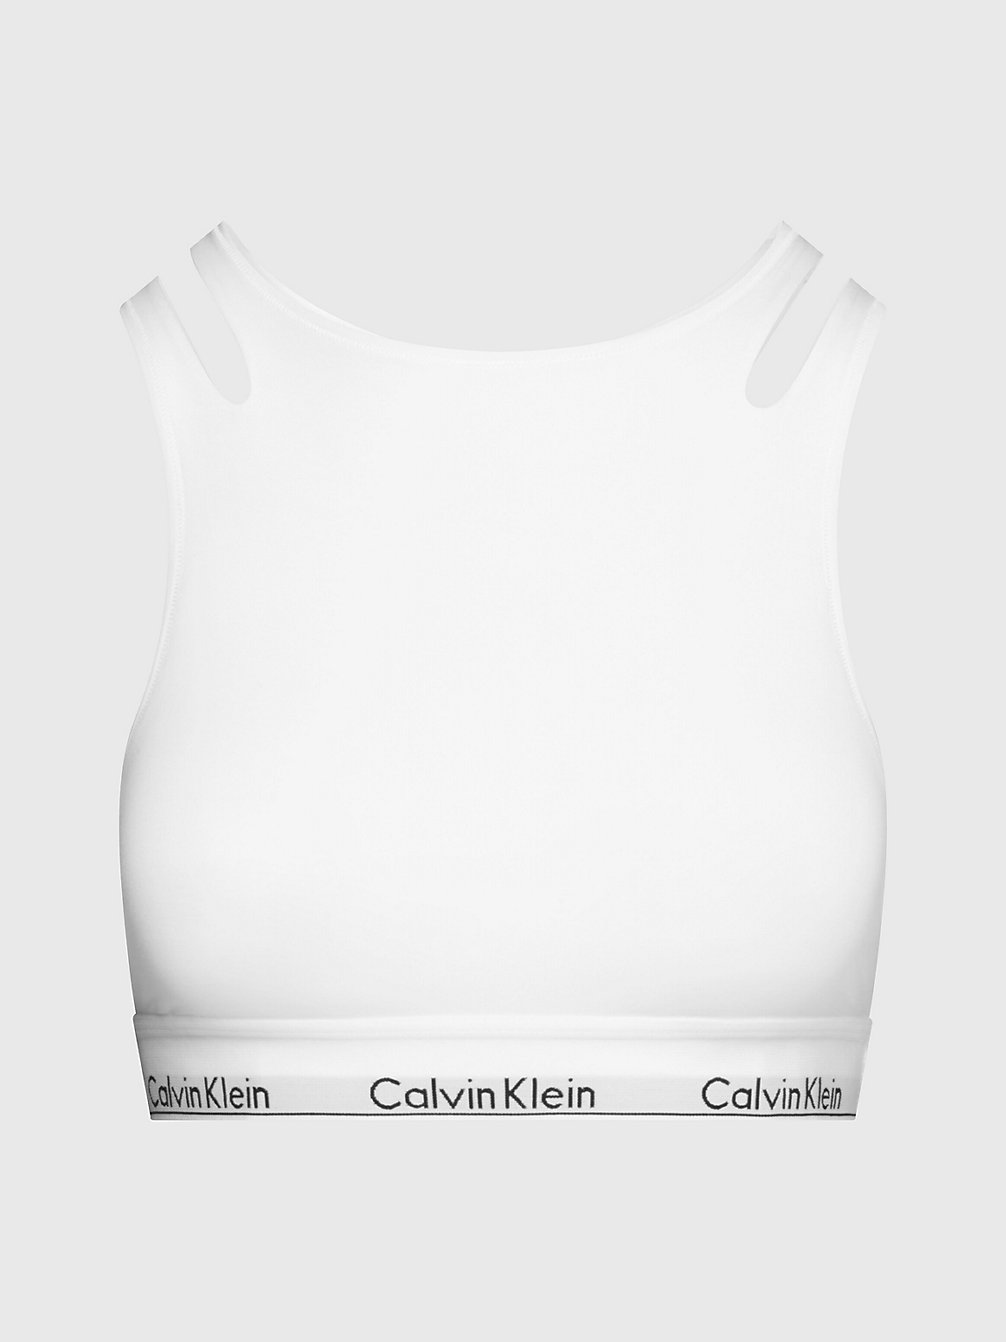 WHITE Bralette - CK Deconstructed undefined women Calvin Klein